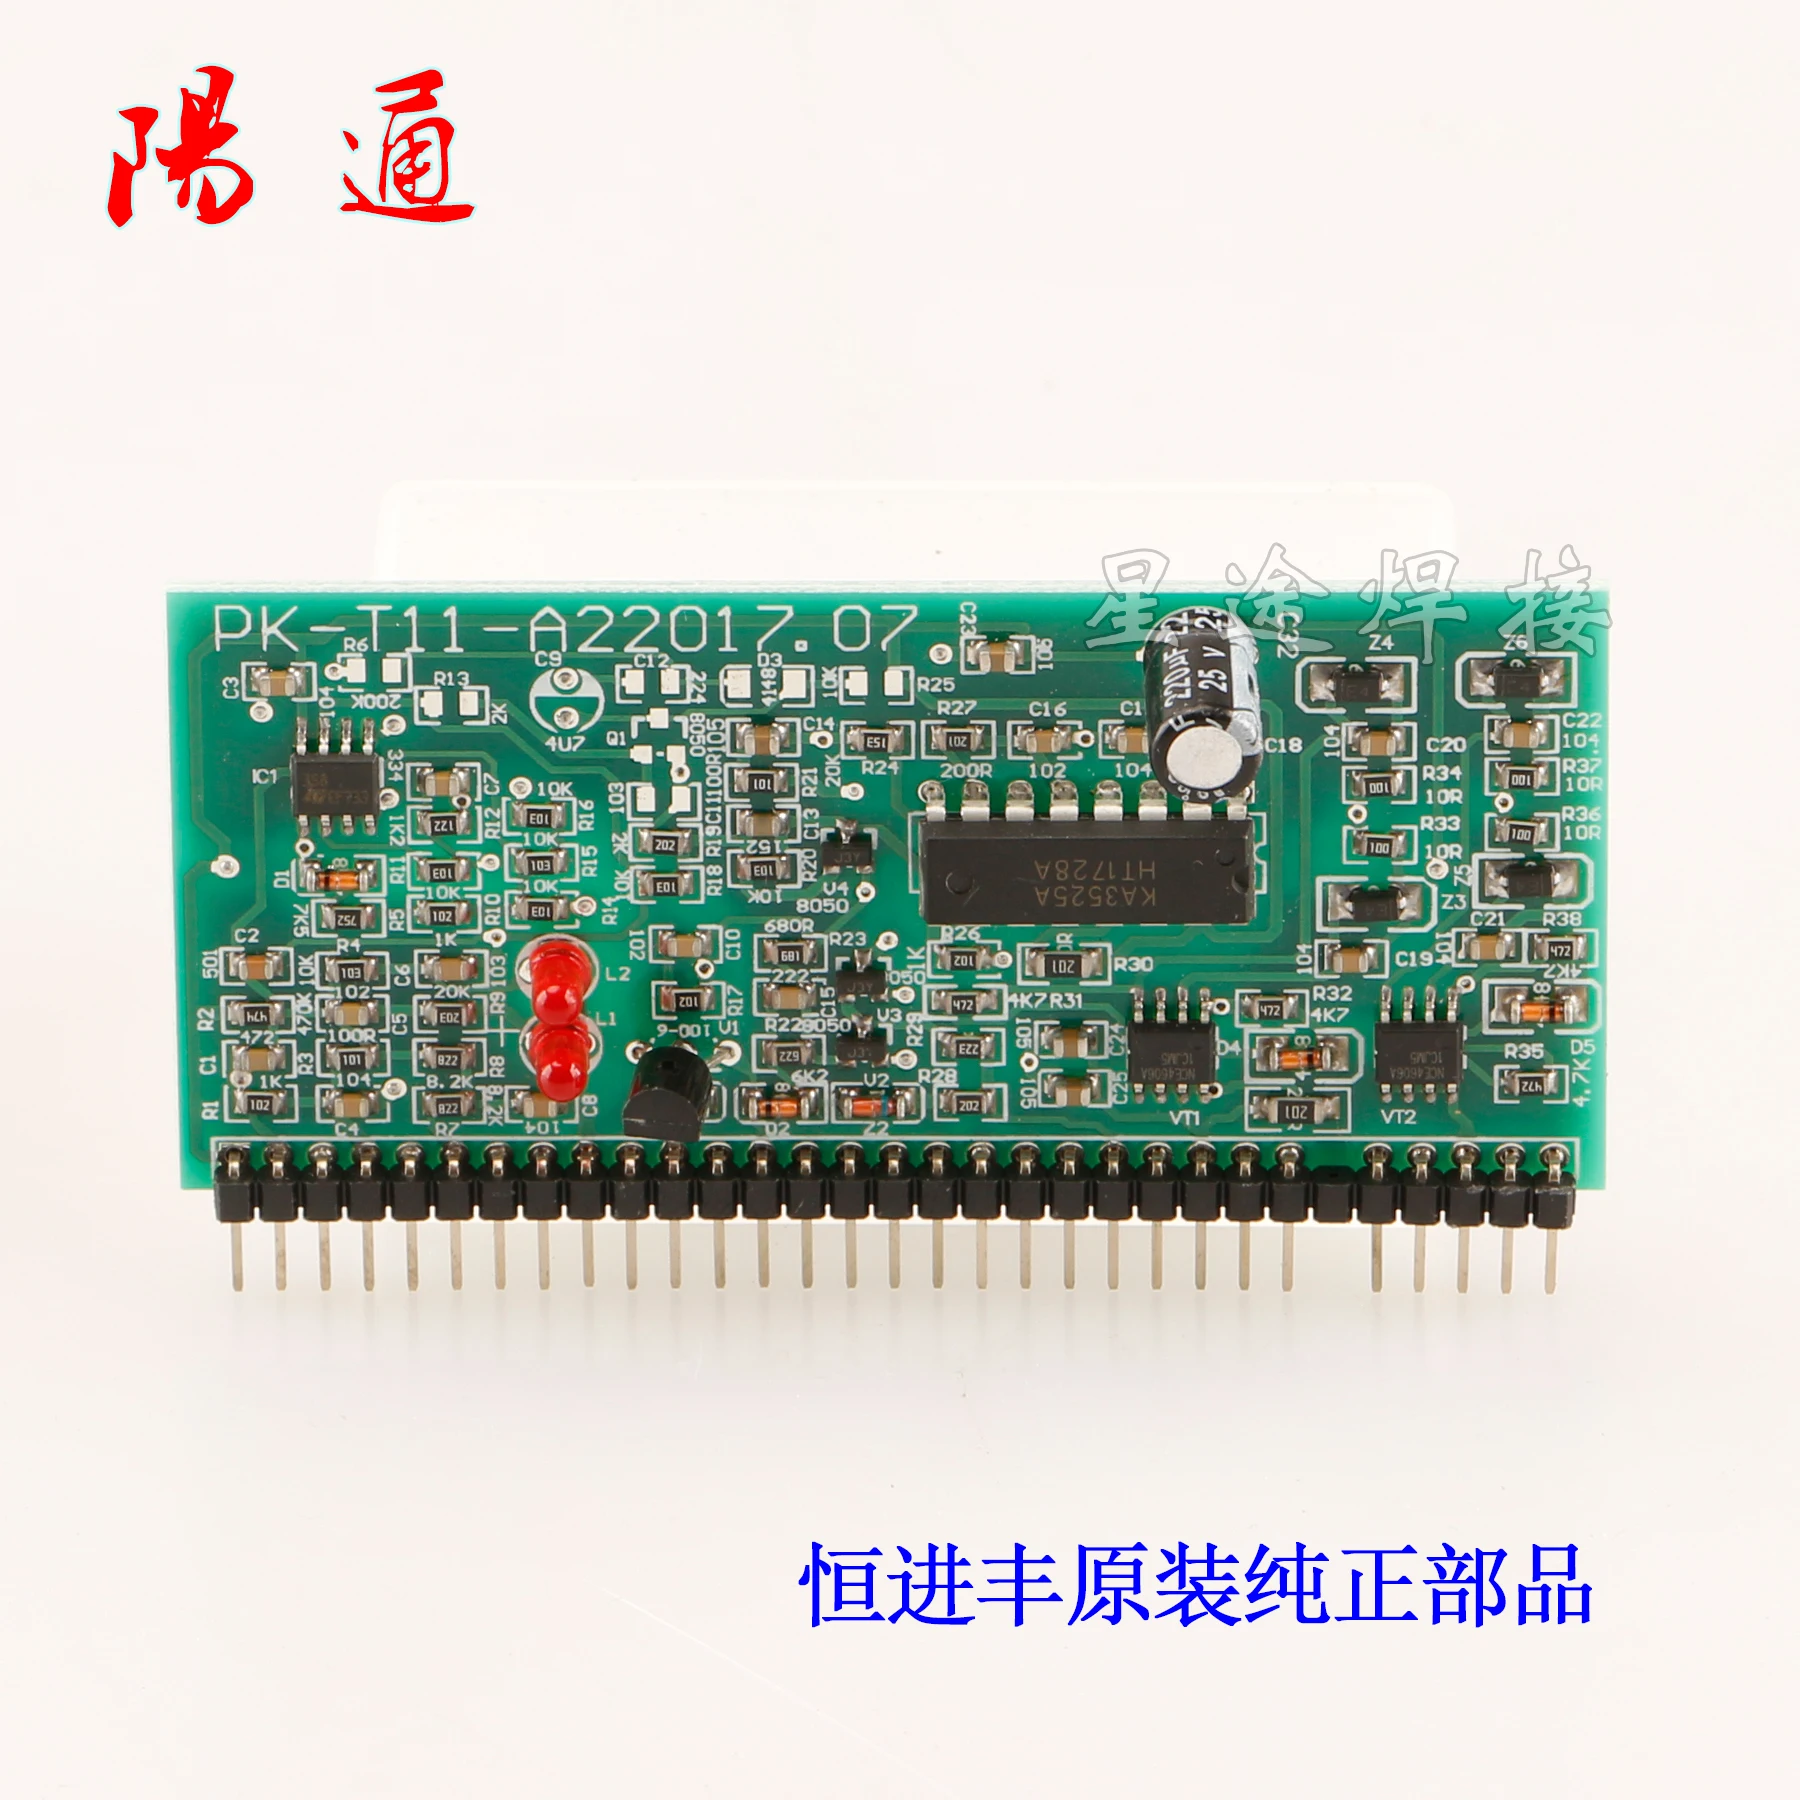 

3525 Control Board Single Tube IGBT Welder Control Module 358 Small Board 4606 Driver Chip